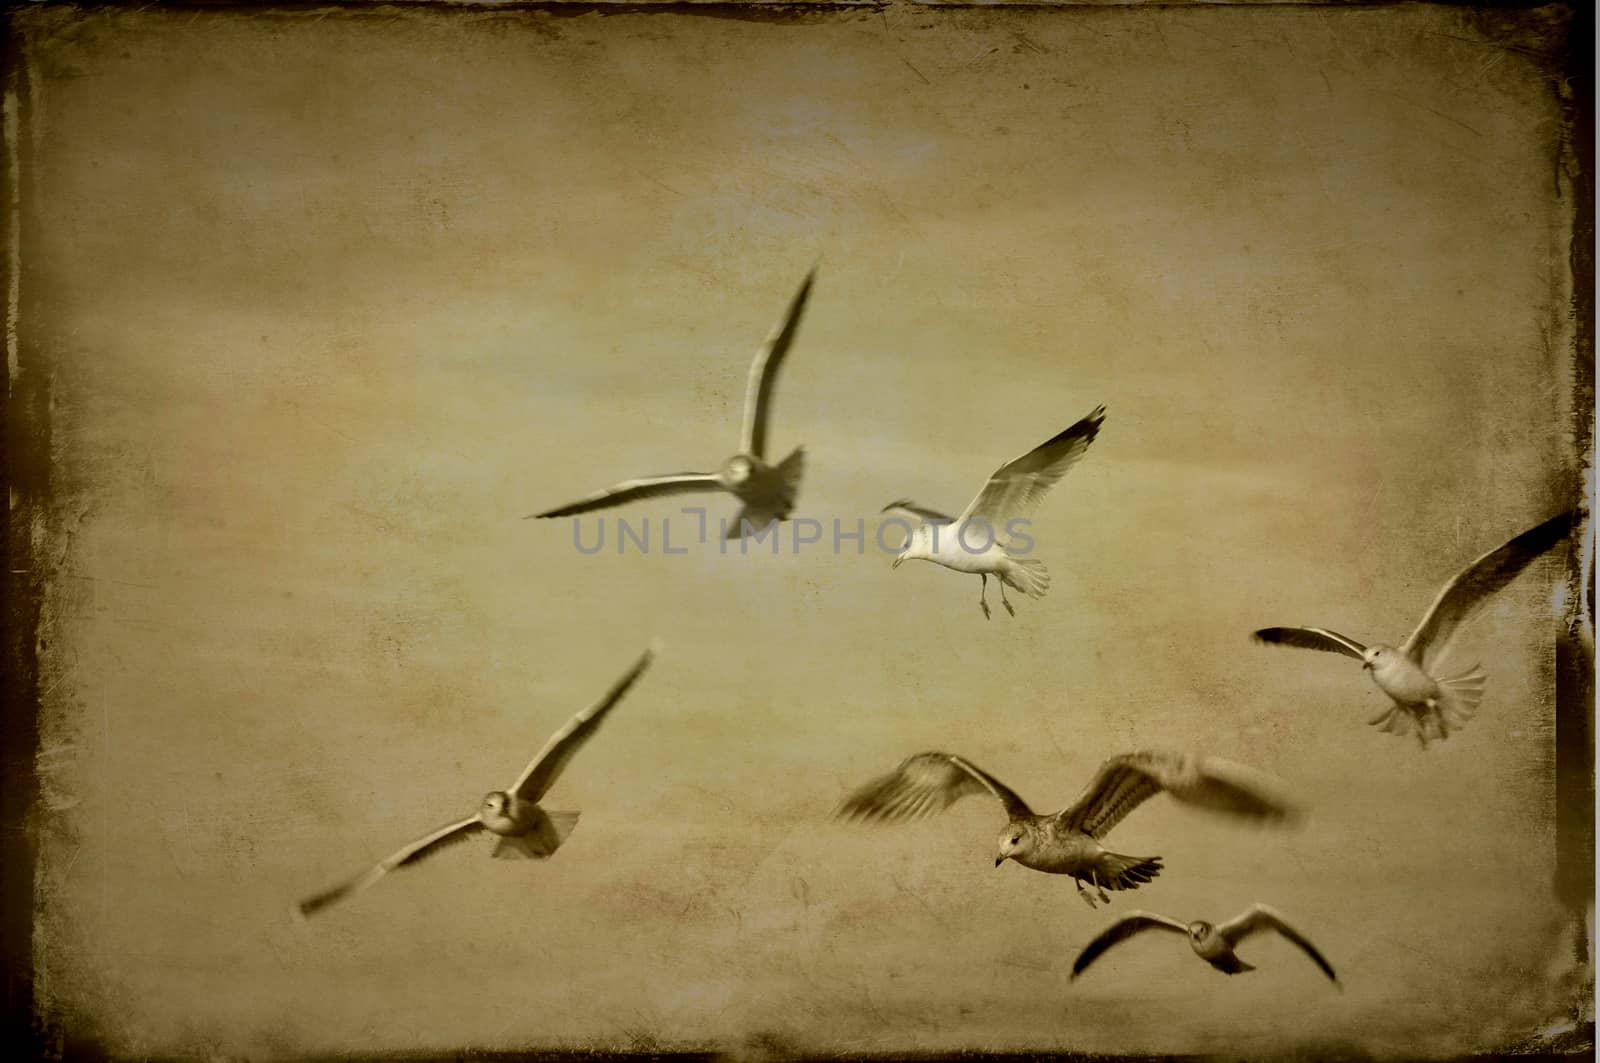 Seagulls flying by ankihoglund